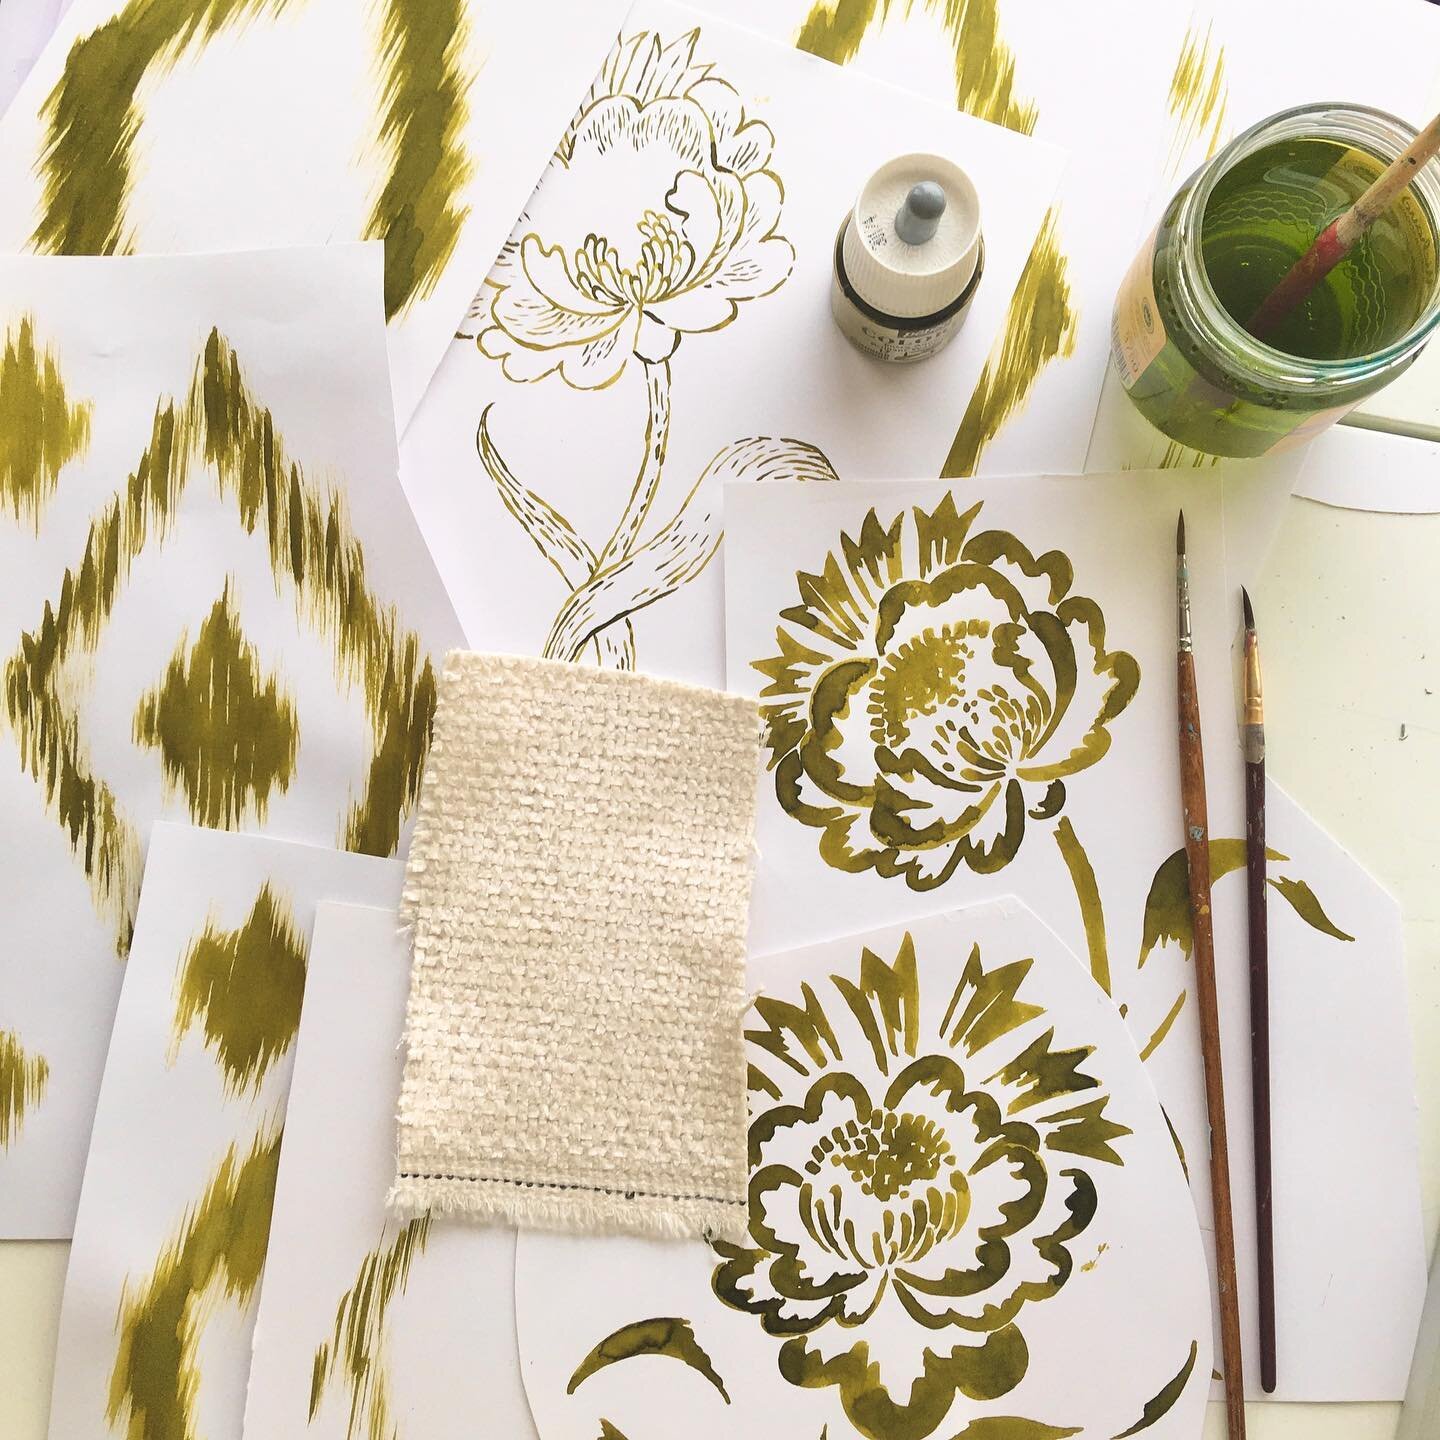 Een heerlijke opdracht voor een klant: prints en patroontjes voor kussens ontwerpen! 🤗 
#patterndesign #ilovemyjob